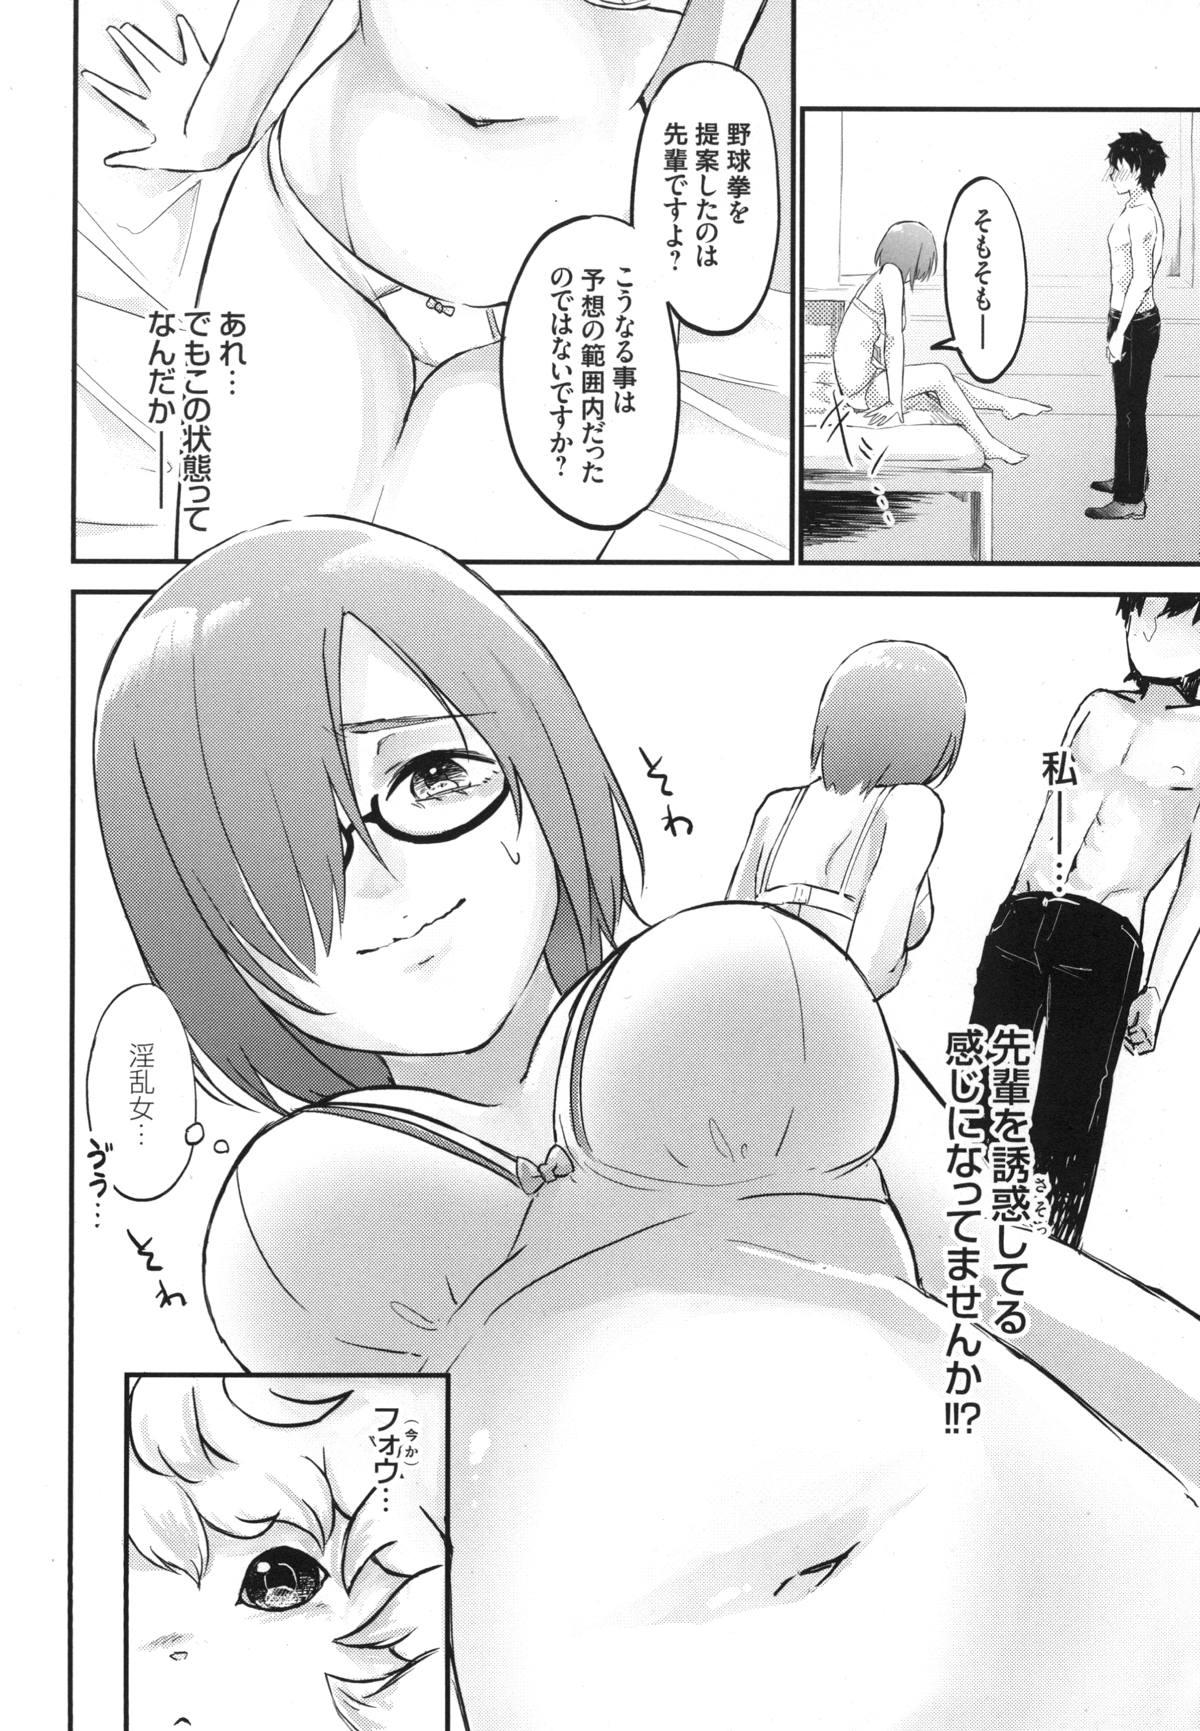 Chaturbate Mash no Migite wa Saijaku desu!? - Fate grand order Nuru Massage - Page 11